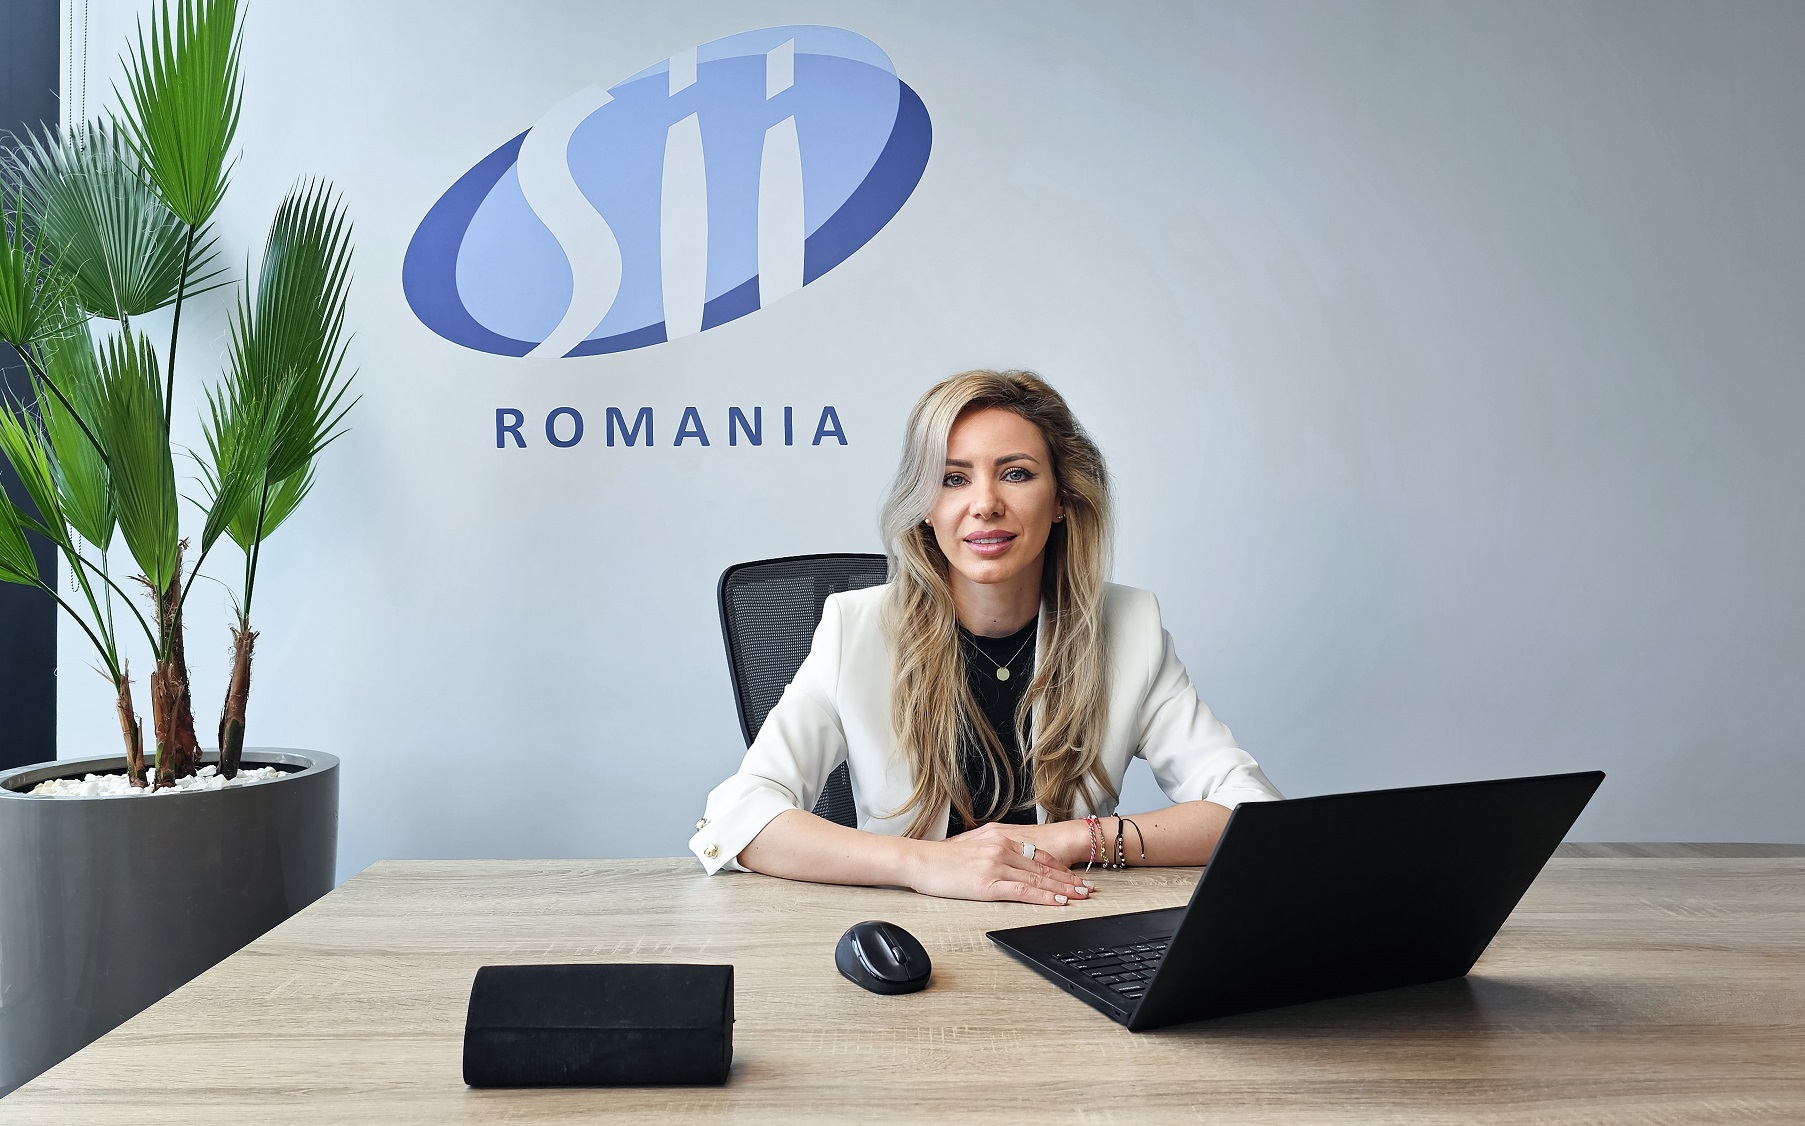 SII România, specializată în servicii şi soluţii IT, anunţă un nou CEO. Iulia Surugiu, care a deţinut anterior funcţia de director operaţional, preia rolul de director general de la Manel Ballesteros, care a condus filiala locală timp de 15 ani. „Vizăm o dezvoltare organică şi sustenabilă şi vom continua să investim în elementele cheie”